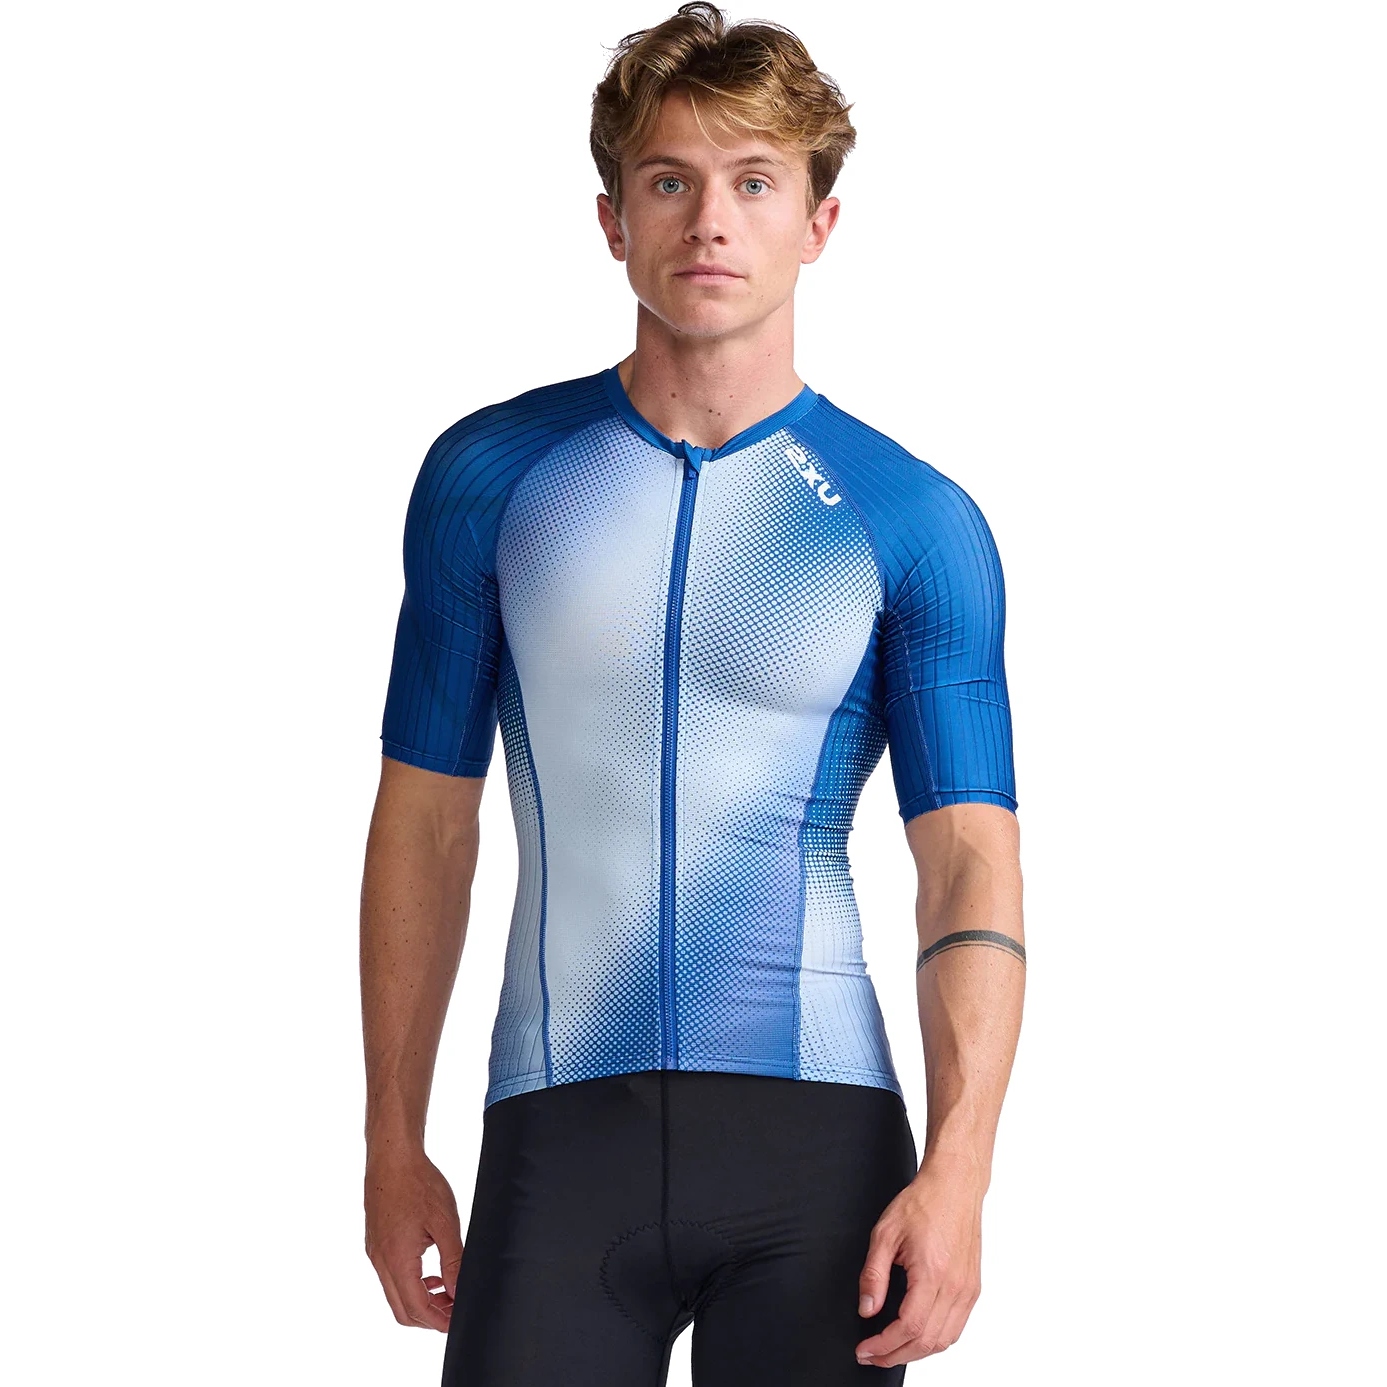 Produktbild von 2XU Aero Triathlon Kurzarm-Shirt - surf/white